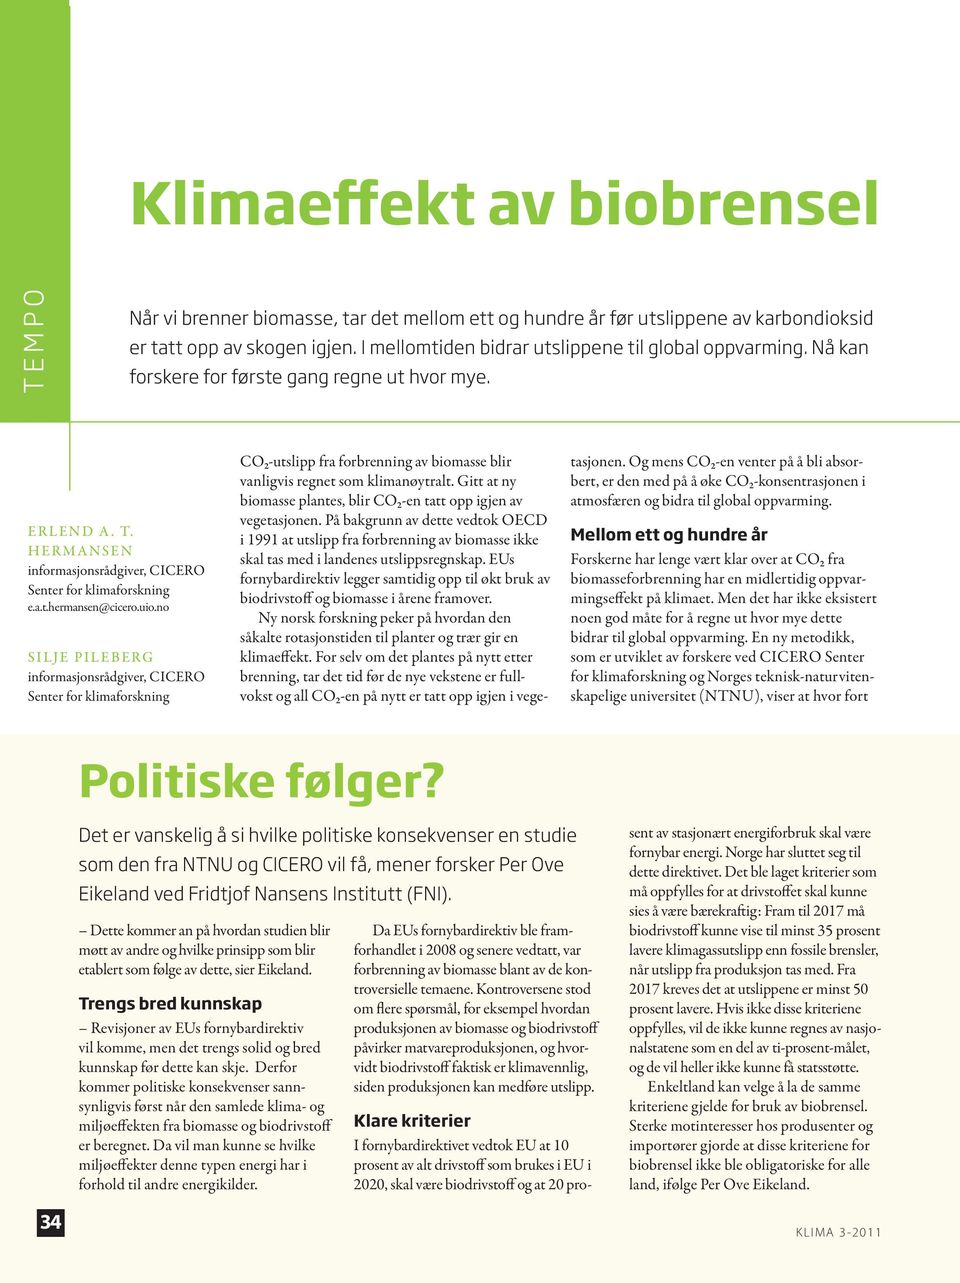 uio.no Silje Pileberg informasjonsrådgiver, CICERO Senter for klimaforskning CO2-utslipp fra forbrenning av biomasse blir vanligvis regnet som klimanøytralt.